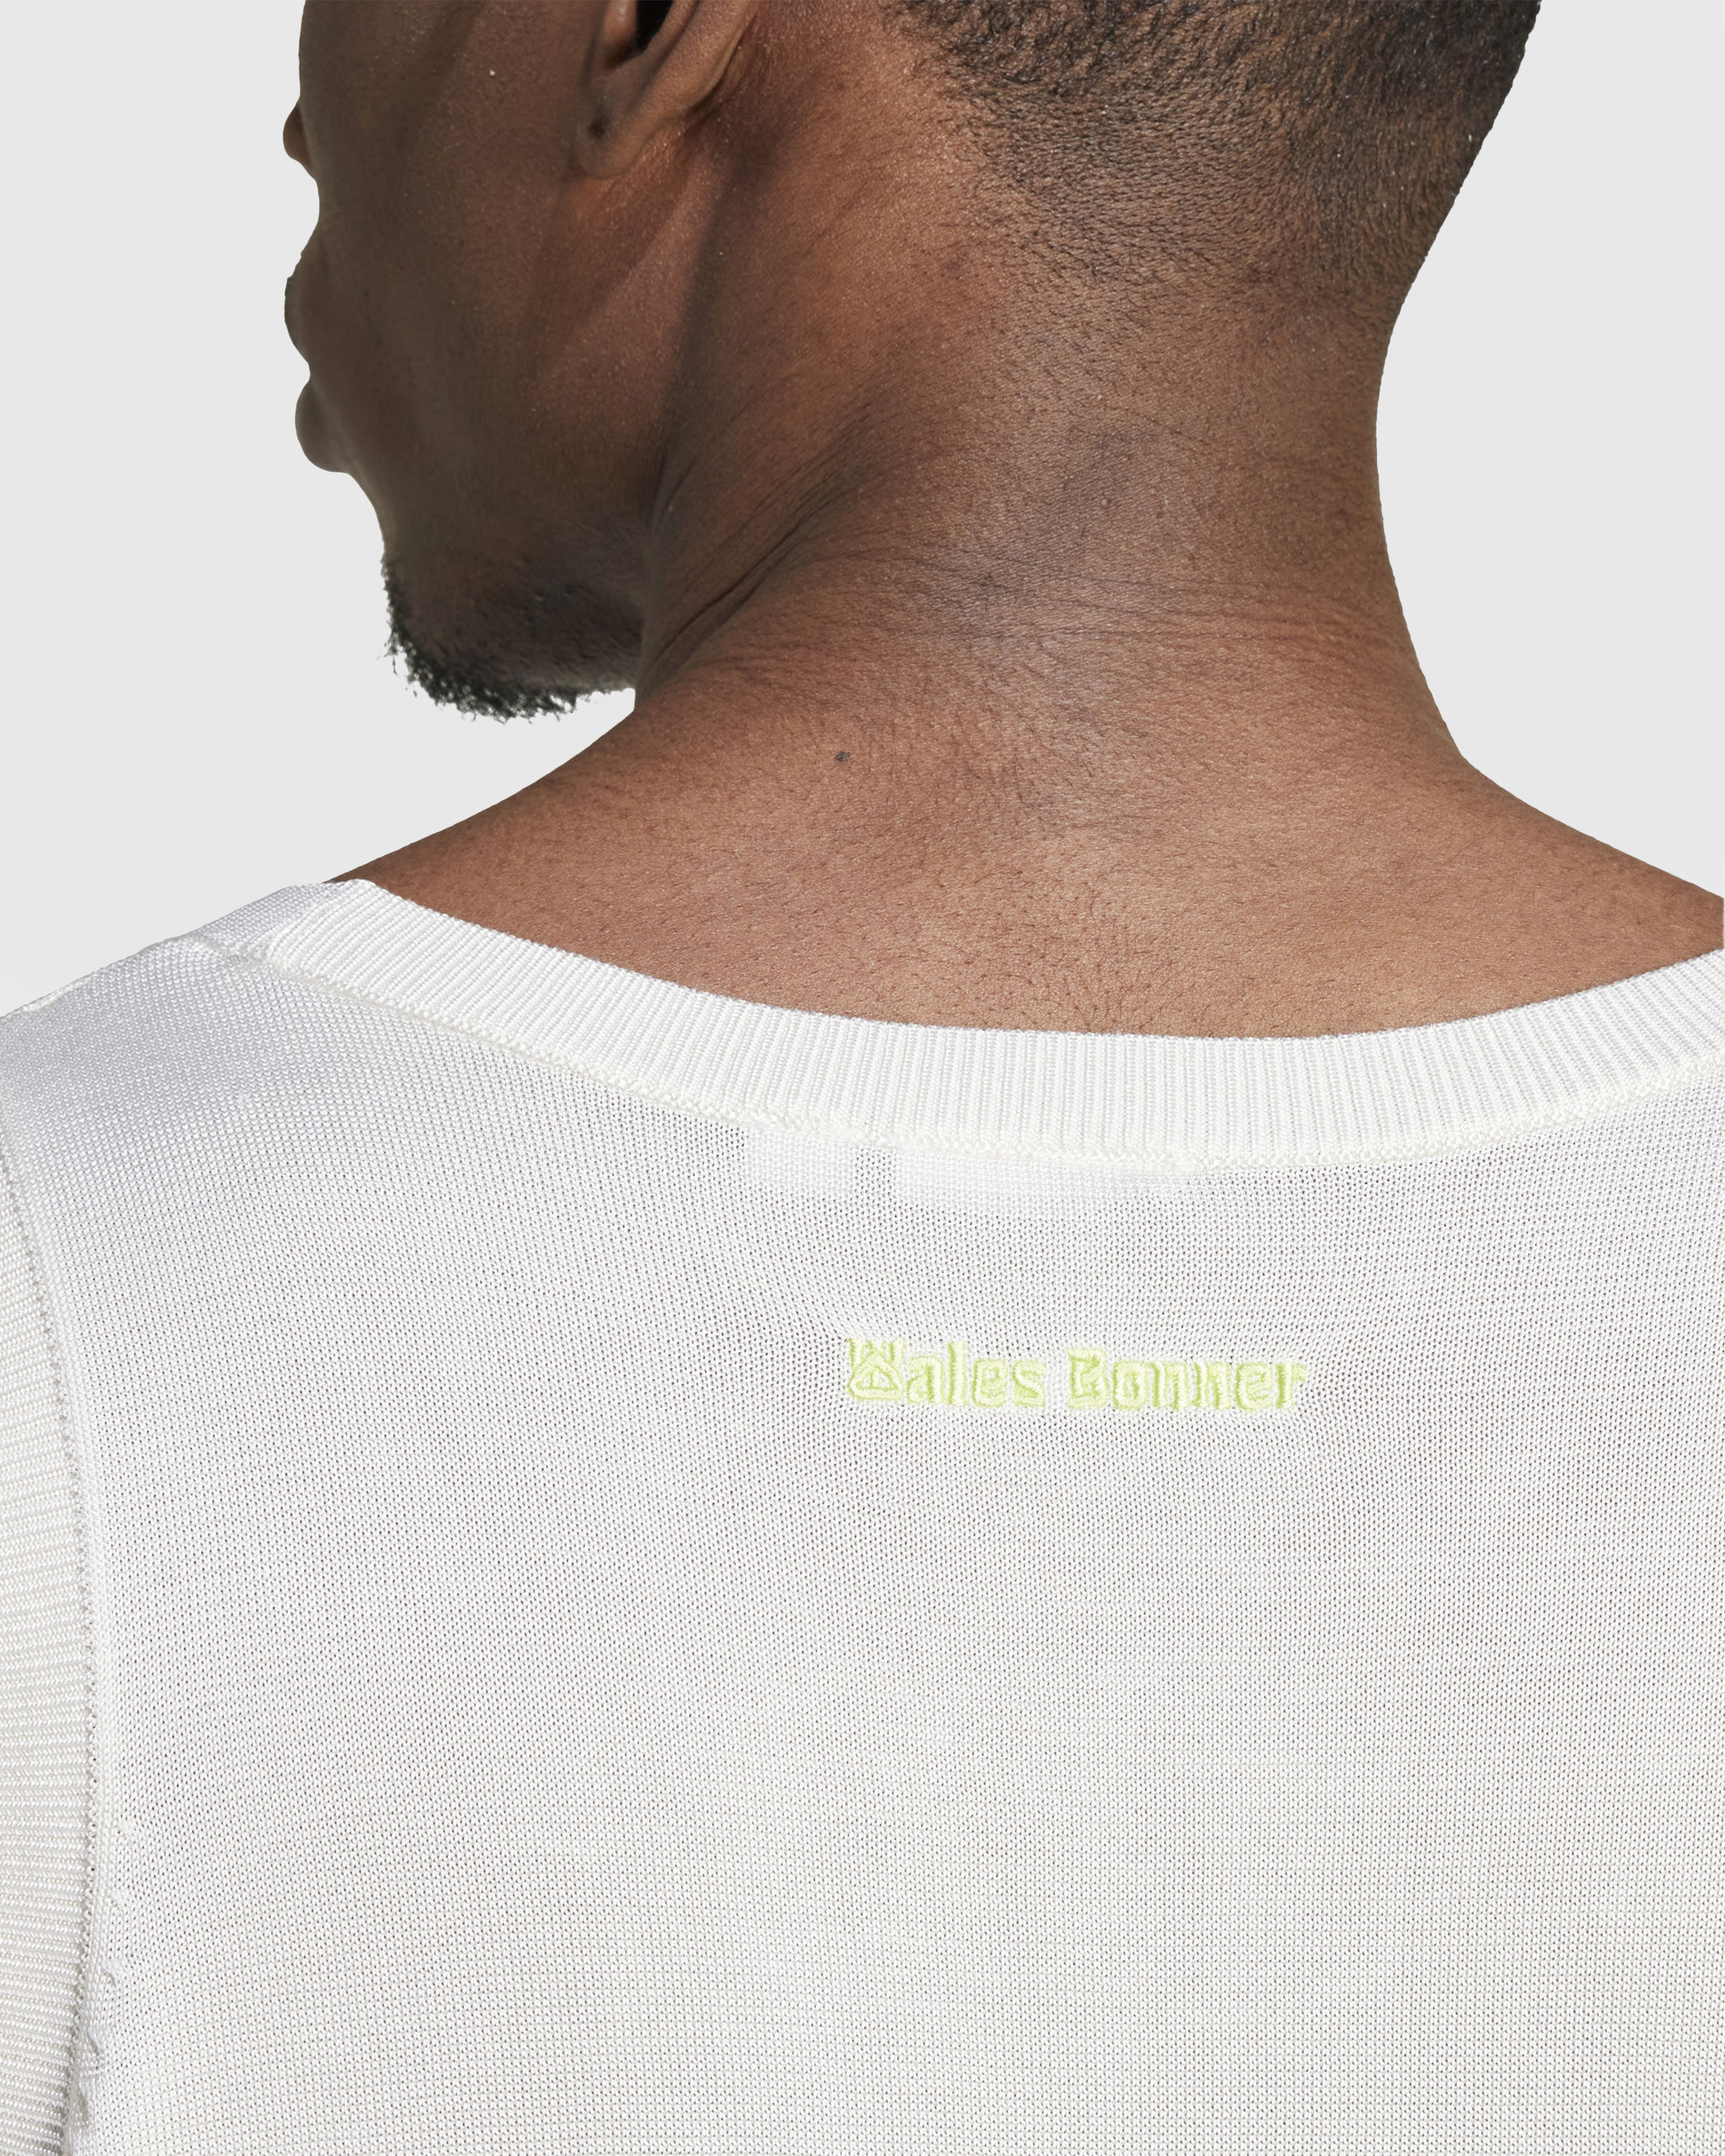 Adidas x Wales Bonner – Knit Vest Chalk White/Semi Frozen Yellow - Tank Tops - White - Image 6